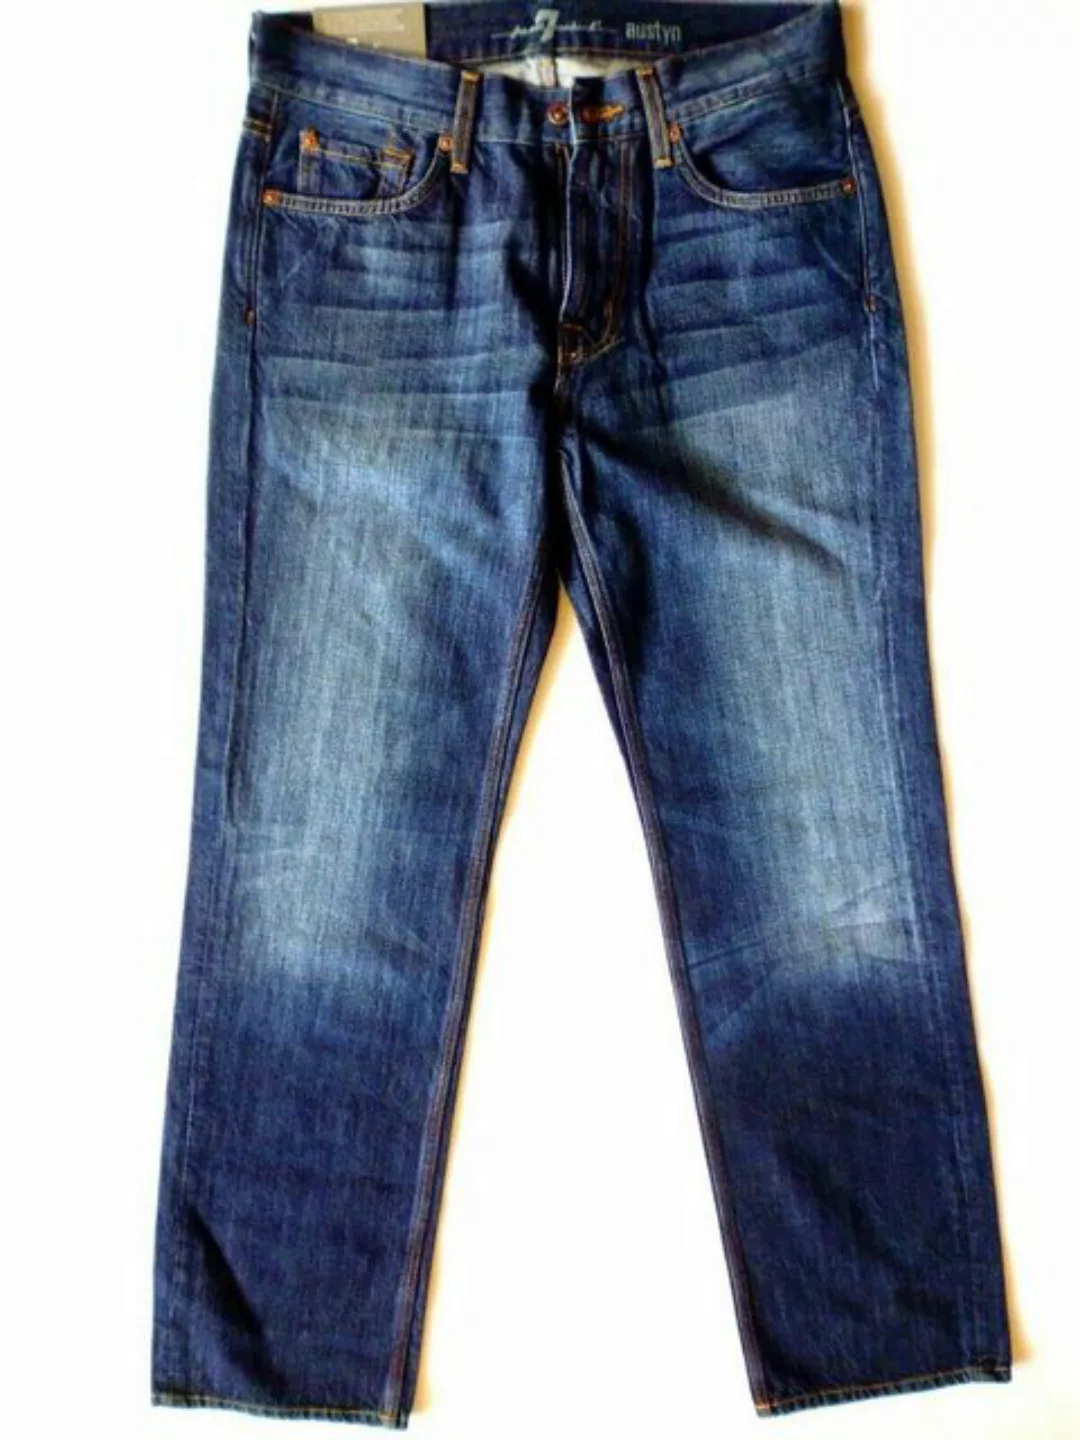 5-Pocket-Jeans 7 For All Mankind Herren Jeanshose, Austyn Dunkel Blau ausge günstig online kaufen